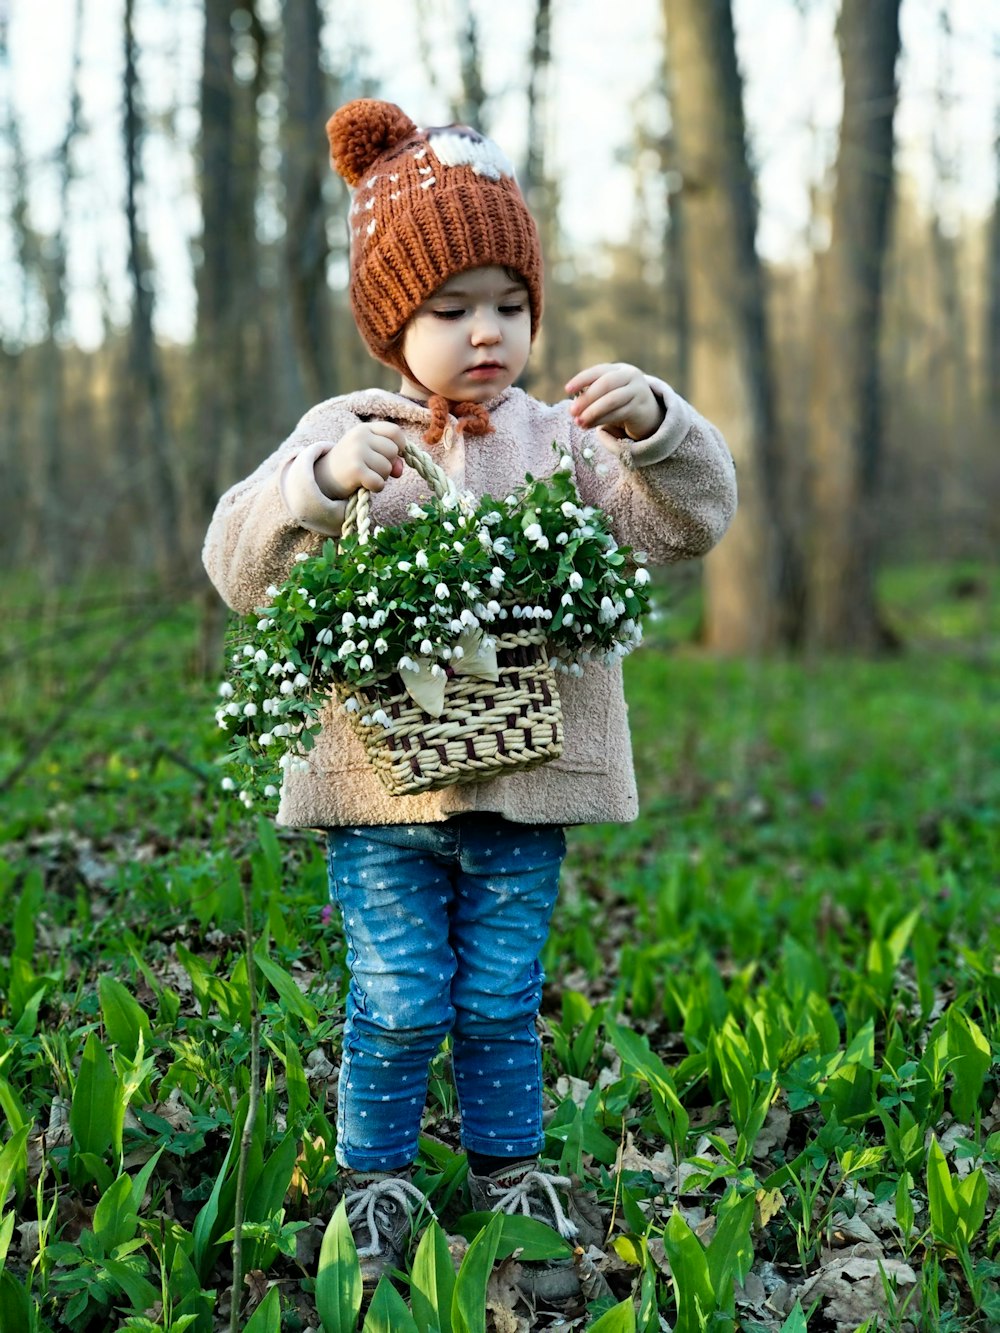 ragazza del bambino che tiene il cesto pieno di fiori nella foresta